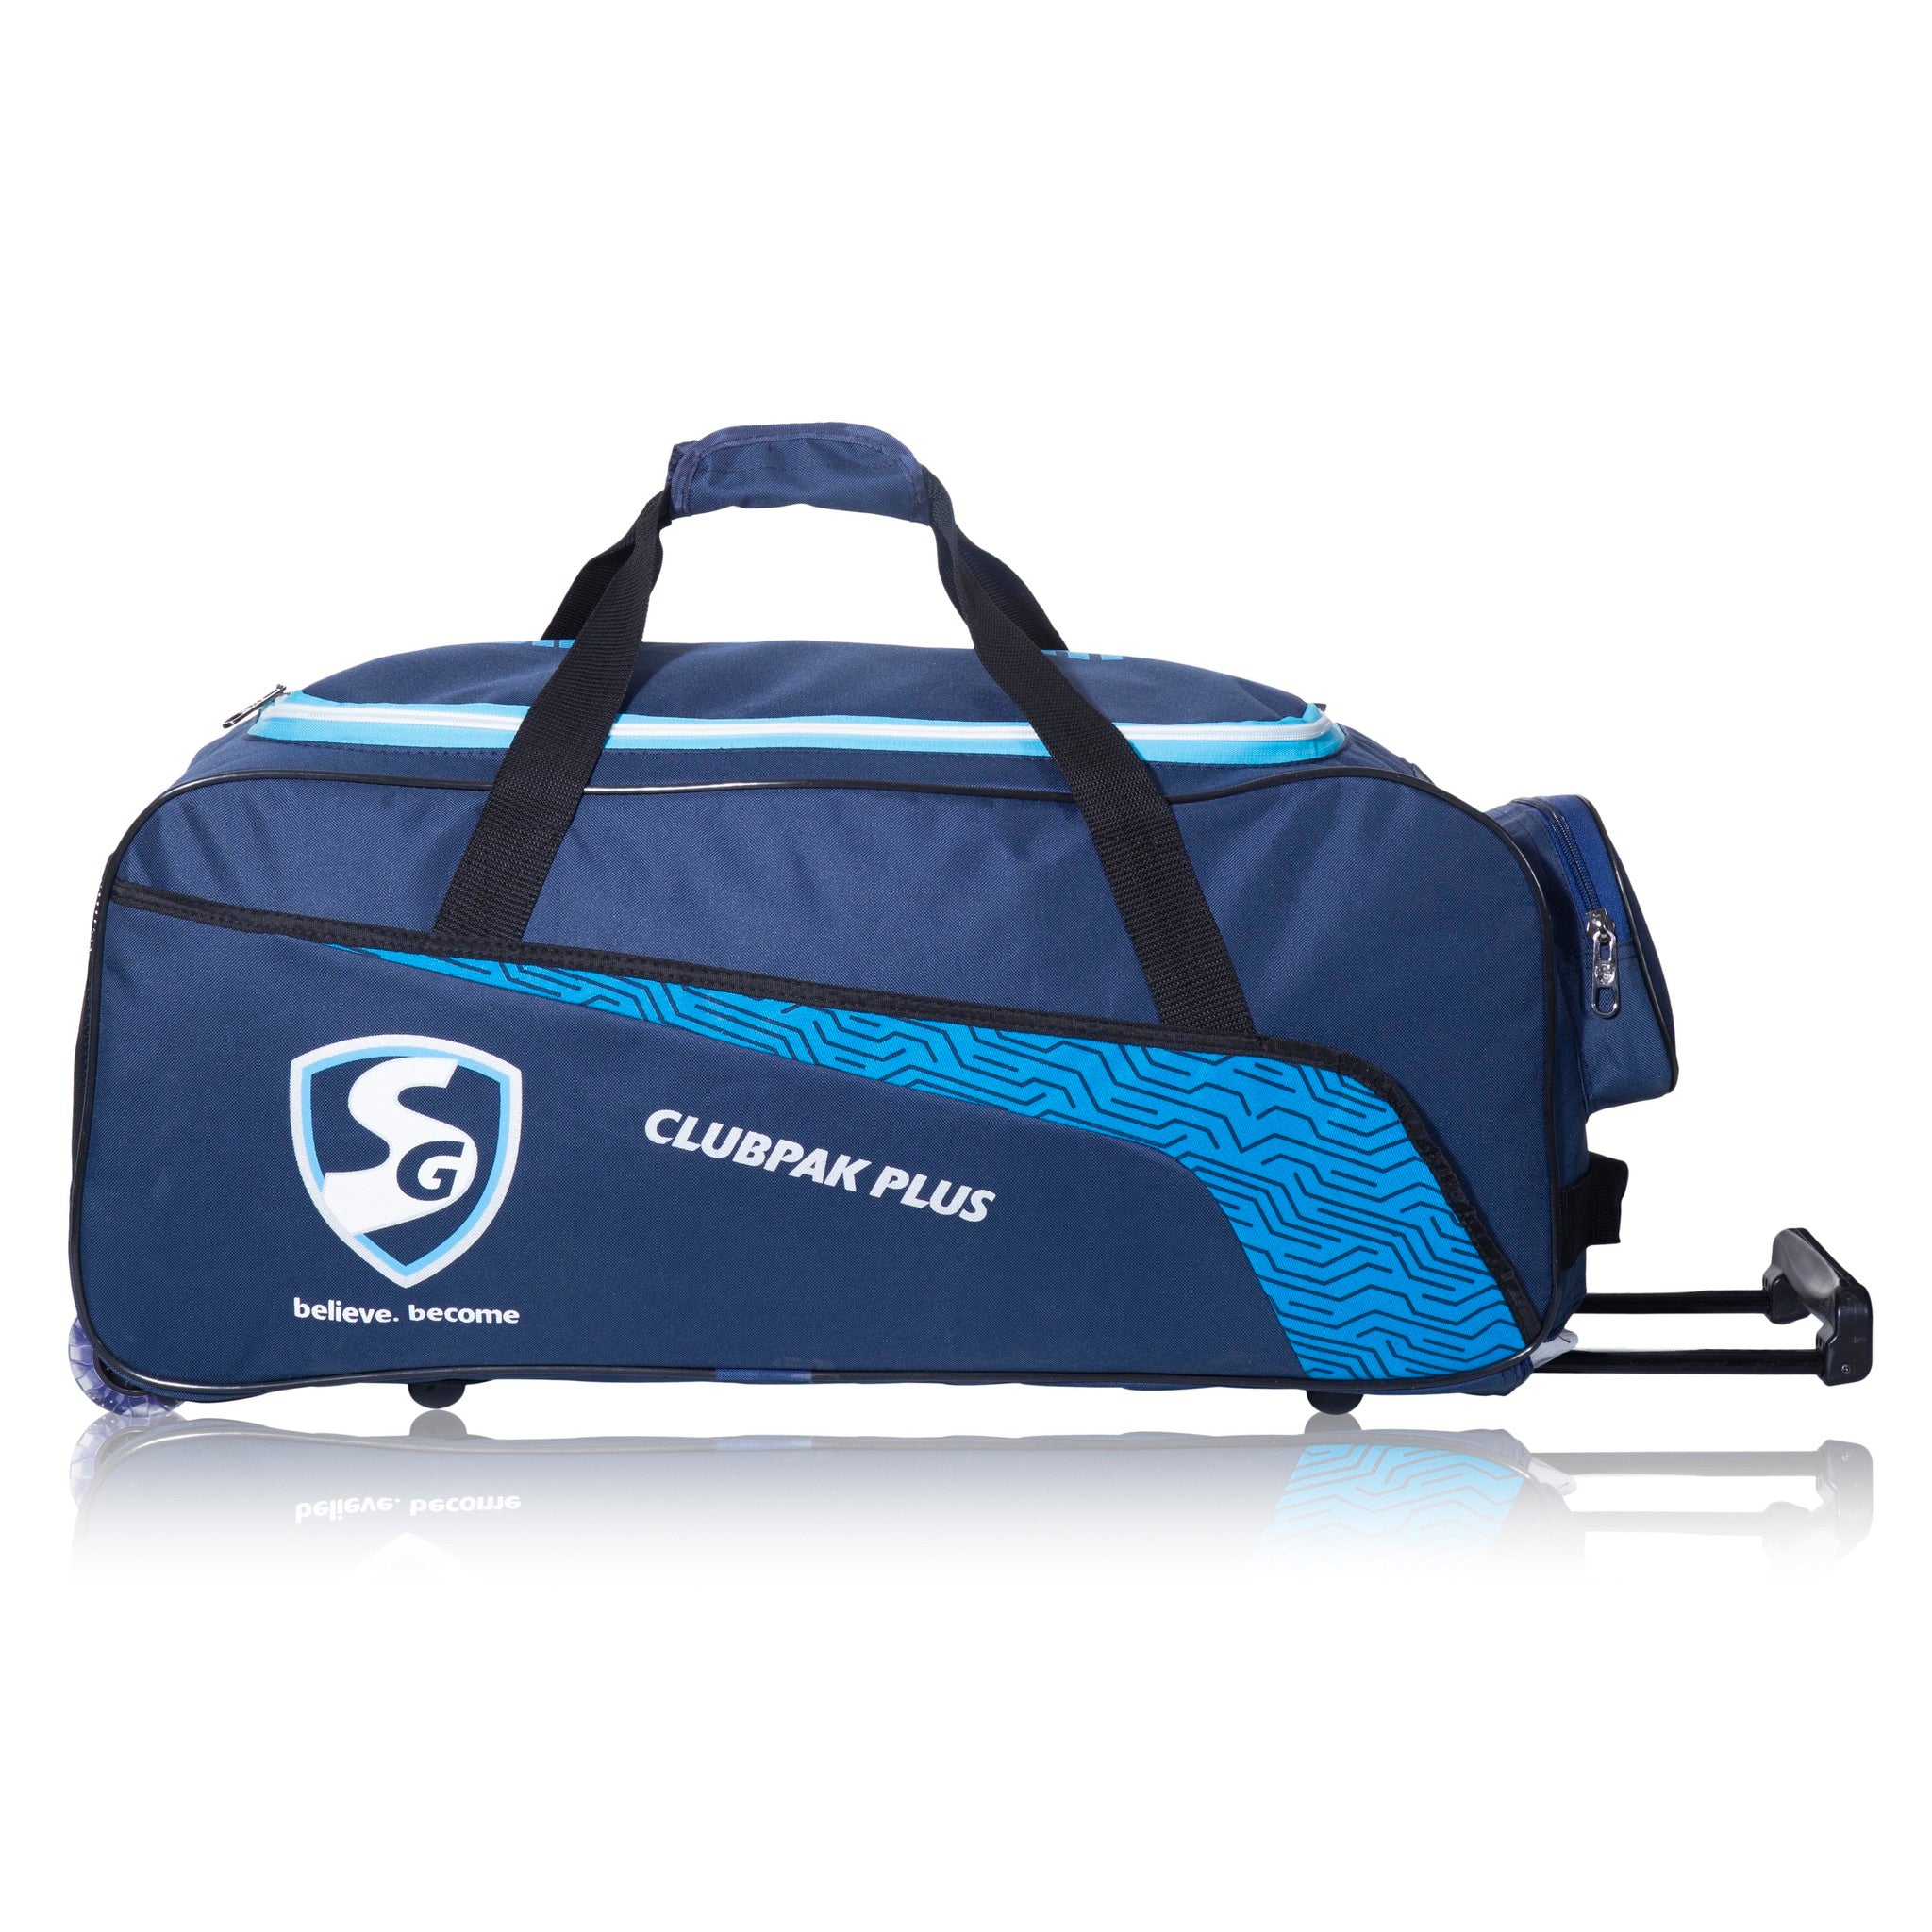 GM 707 Cricket Kit Bag - Duffle - Medium